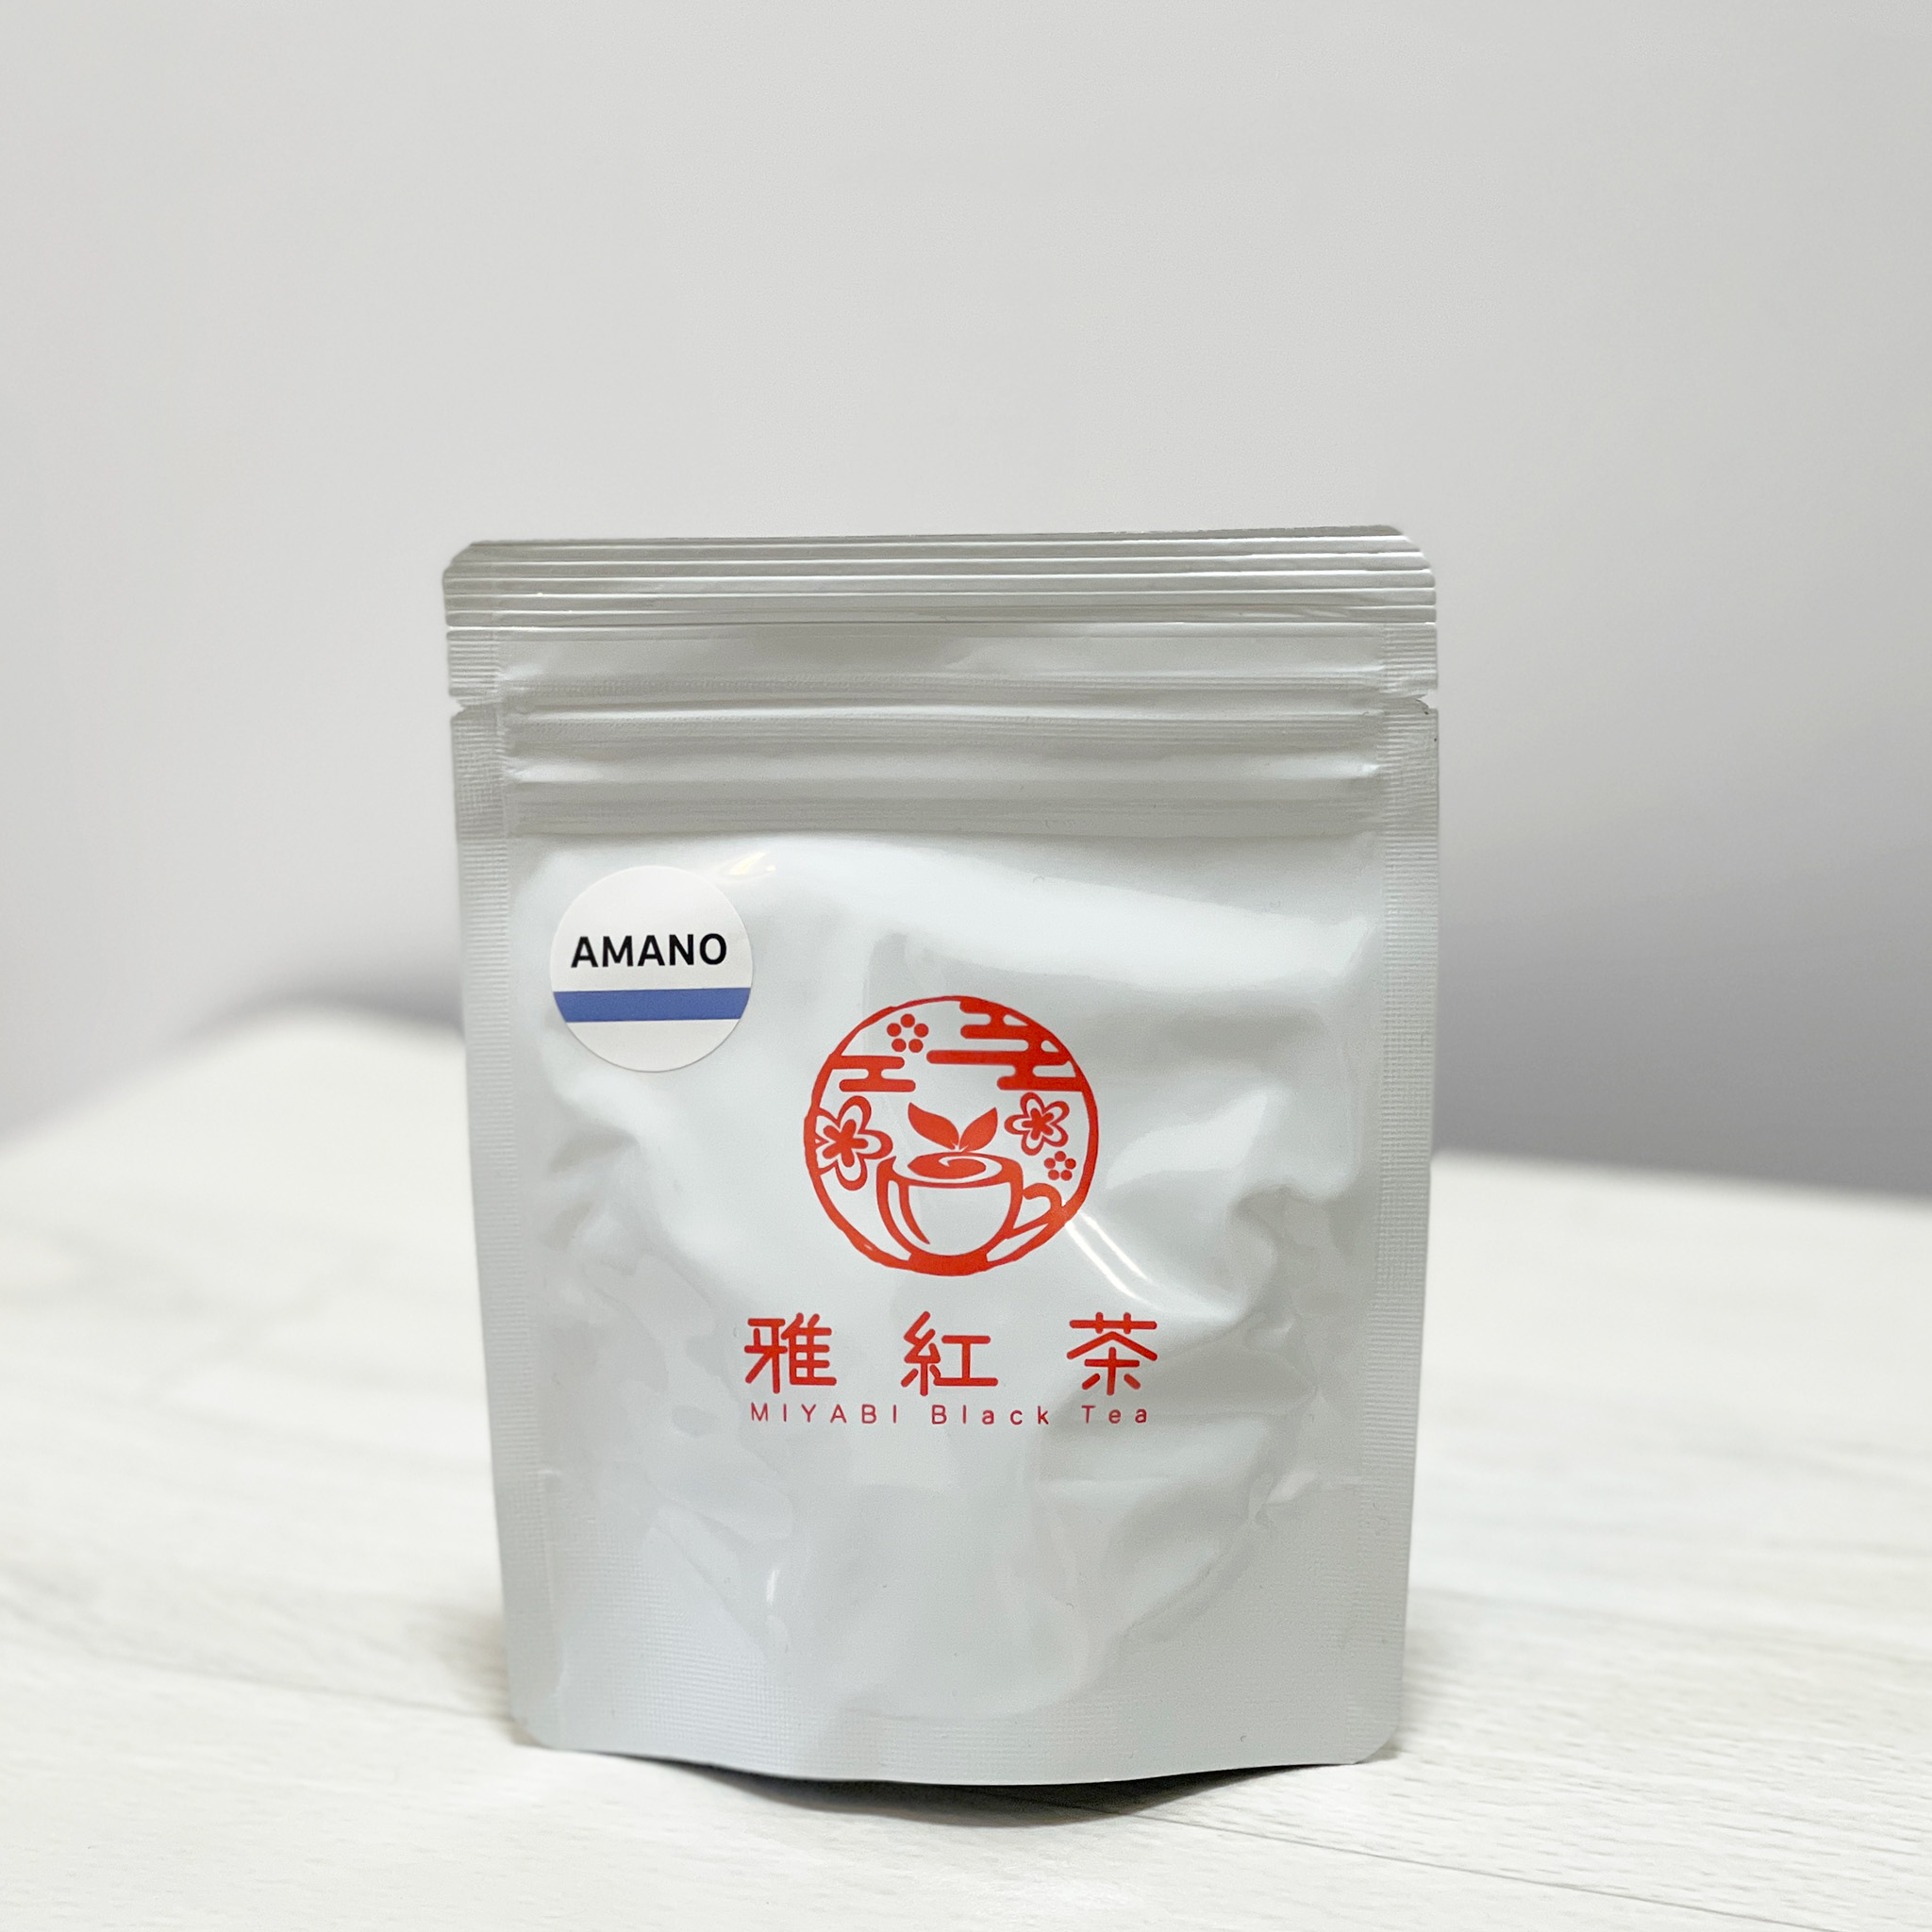 送料無料 日本で栽培加工された紅茶 返品?交換対象商品 和紅茶 AMANO 雅紅茶 リーフティー 魅力の